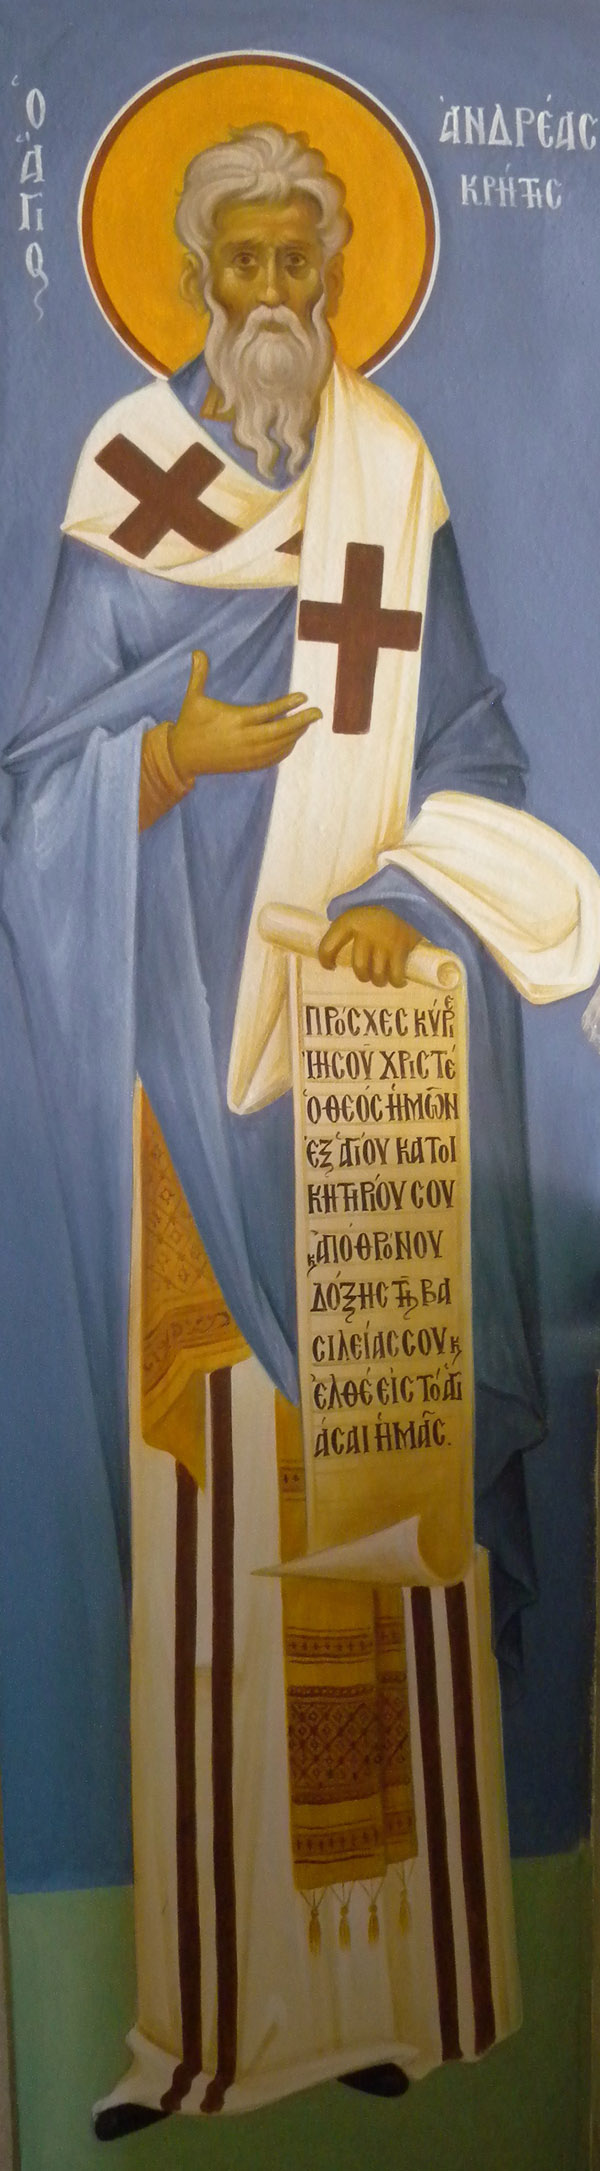 Άγιος Ανδρέας ο Ιεροσολυμίτης Αρχιεπίσκοπος Κρήτης - Ι. Ν. Οσίων Παρθενίου και Ευμενίου των εν Κουδουμά, δια χειρός Παναγιώτη Μόσχου (2006 μ.Χ.)